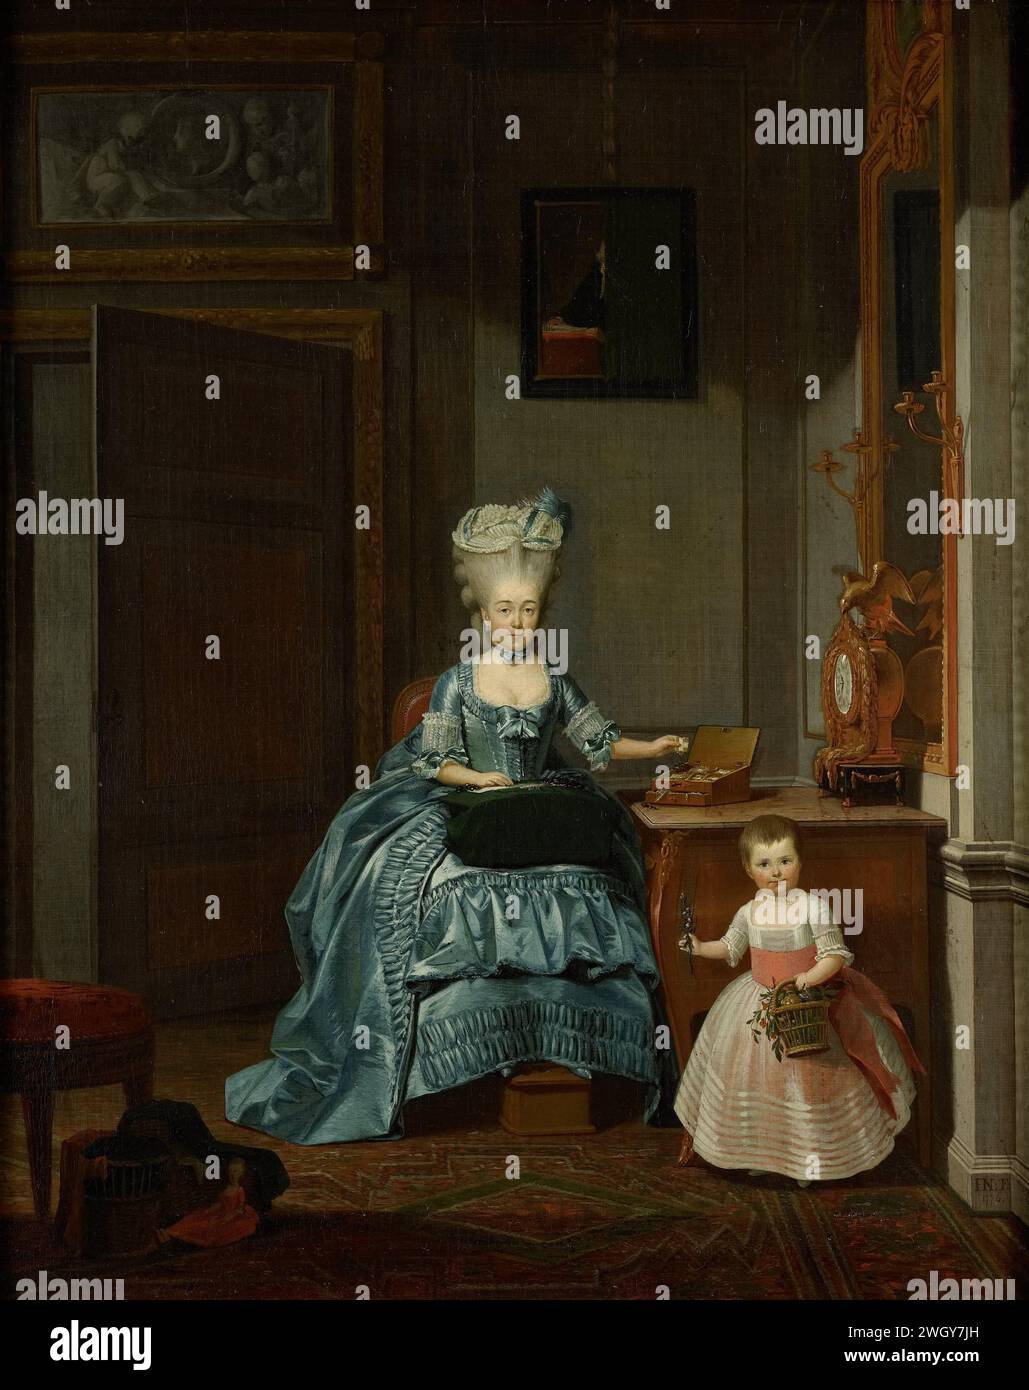 Susanna van Collen née Mogge et sa fille, Hermanus Numan, 1776 peinture Portrait de Suzanna Cornelia Mogge (1753-1806), deuxième épouse de Hendrik Muilman (1743-1812), avec sa fille Johanna Ferdinanda (1774-1833) de son mariage avec Ferdinand van Collen (1741-73). Assis dans un salon, occupé avec des bobines de dentelle. Sa fille a un panier avec des fleurs à la main. Au-dessus de la porte une grisaille, une peinture au mur, une boîte à coudre sur la table et un pendule. toile. Peinture à l'huile (peinture) personnes historiques - BB - femme. mère et fille(s) (groupe familial). intérieur de la maison. fabrication de lacets Banque D'Images